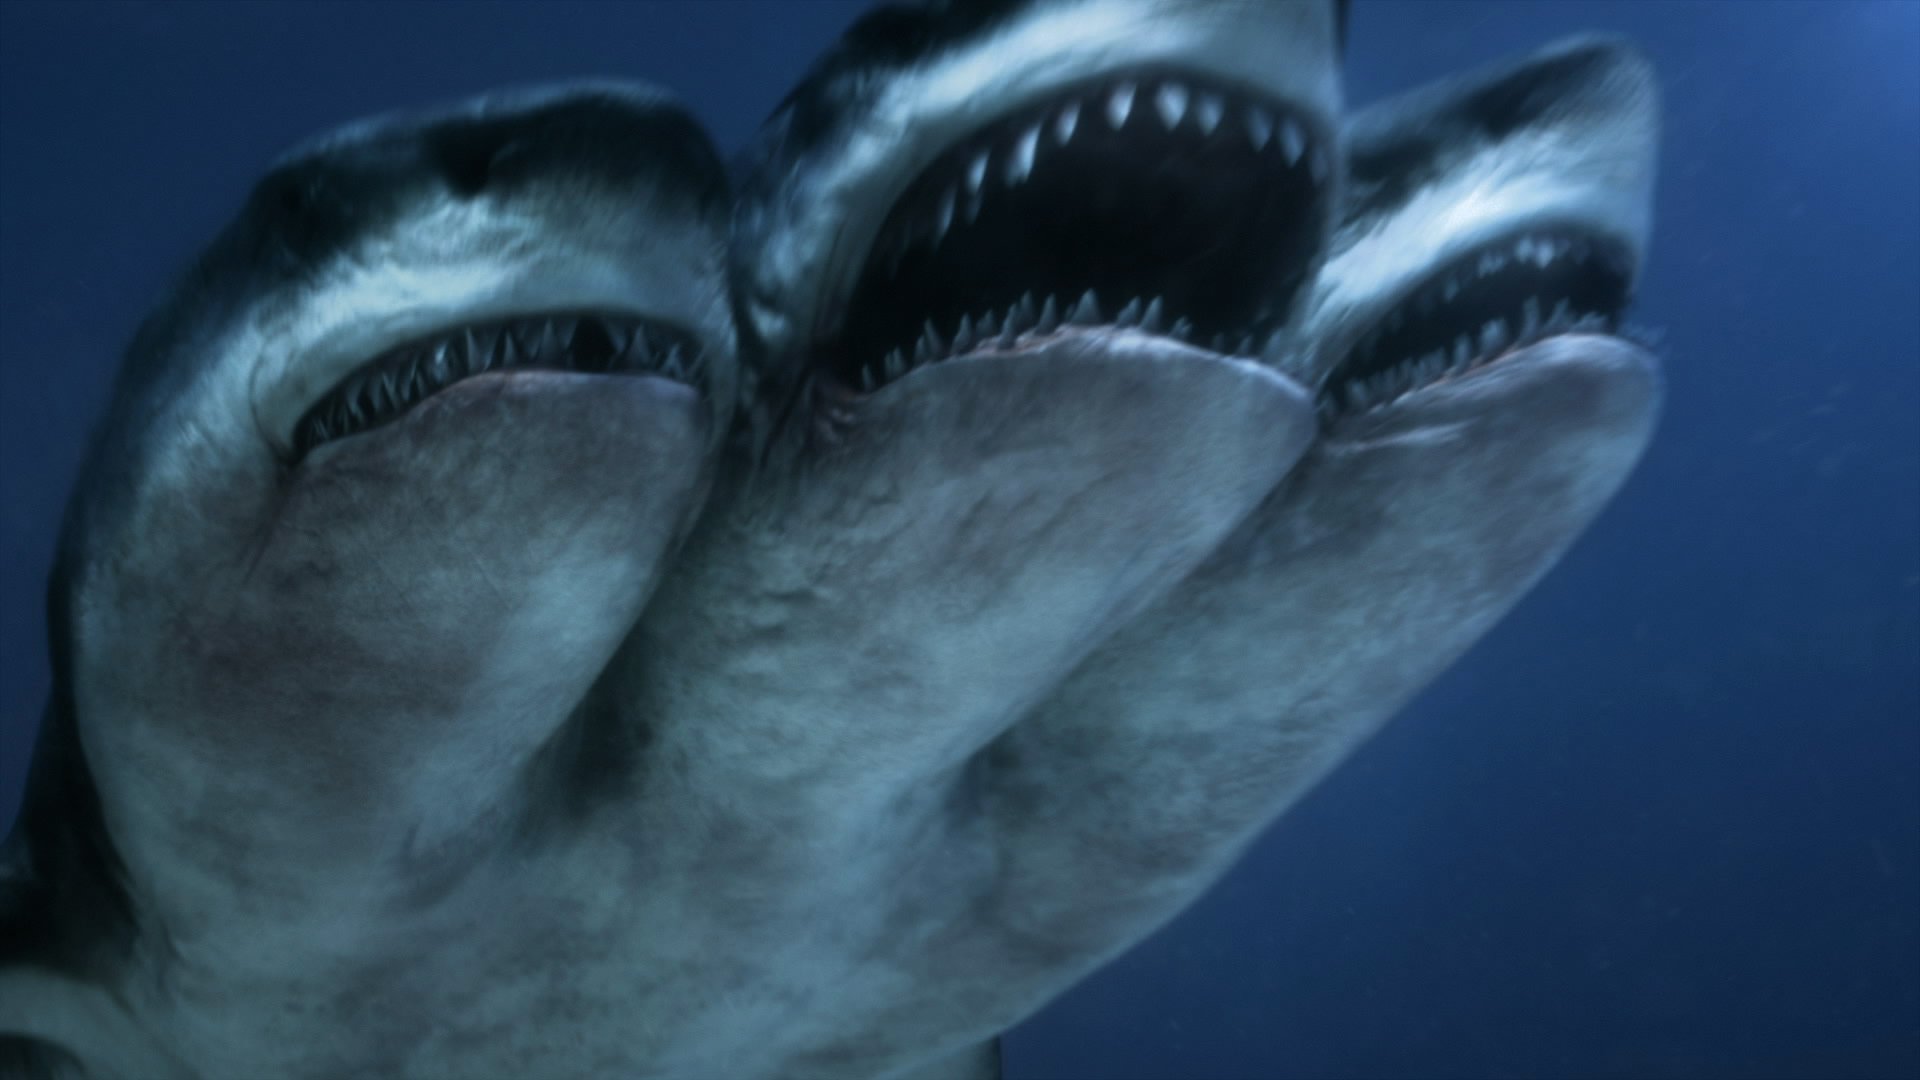 Tthree-headed shark in 3 Headed Shark Attack (2015)